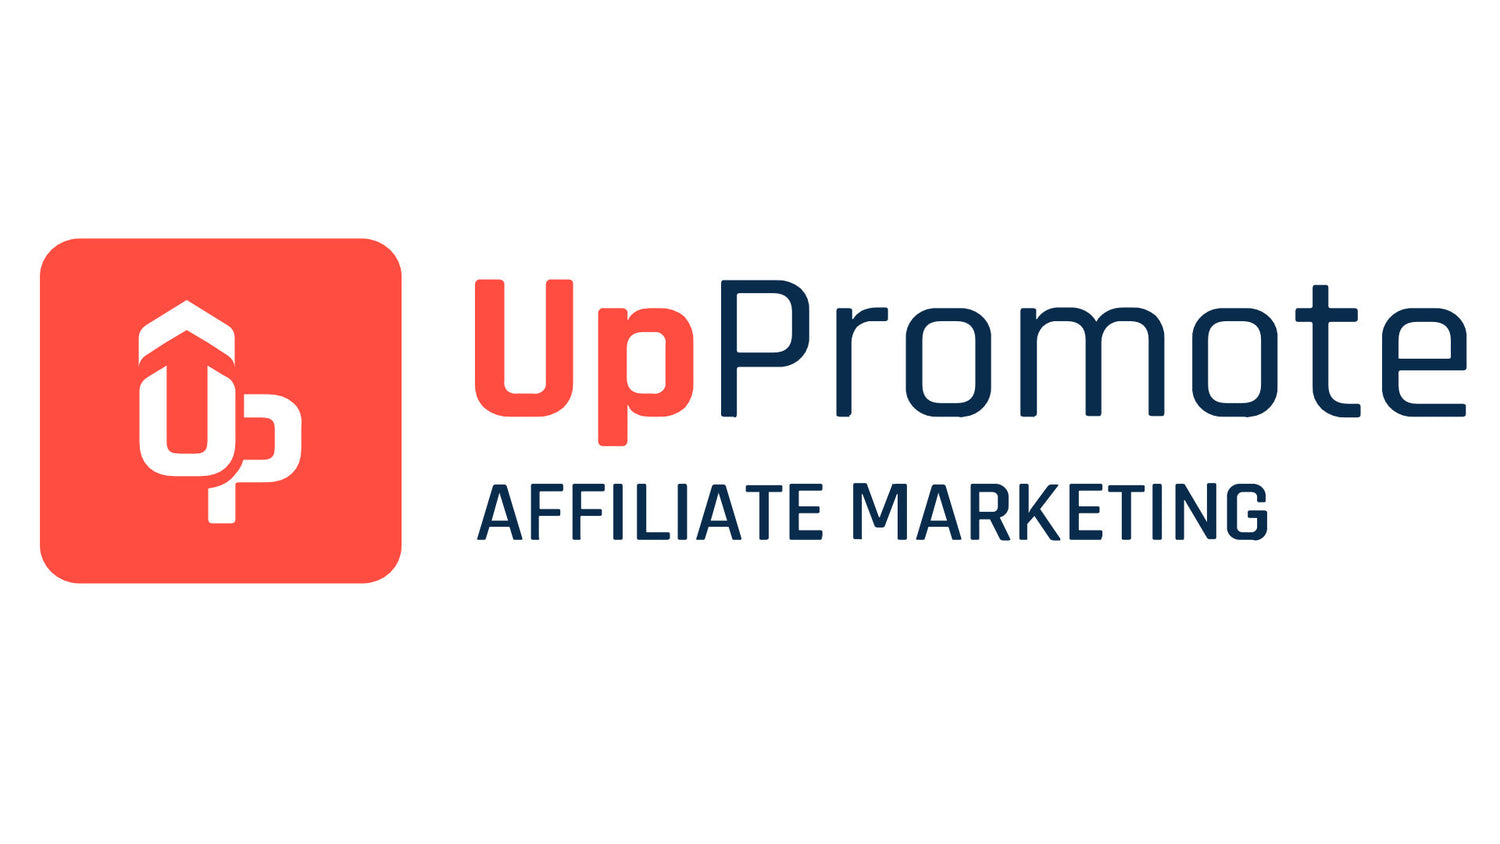 Uppromote affiliate marketing